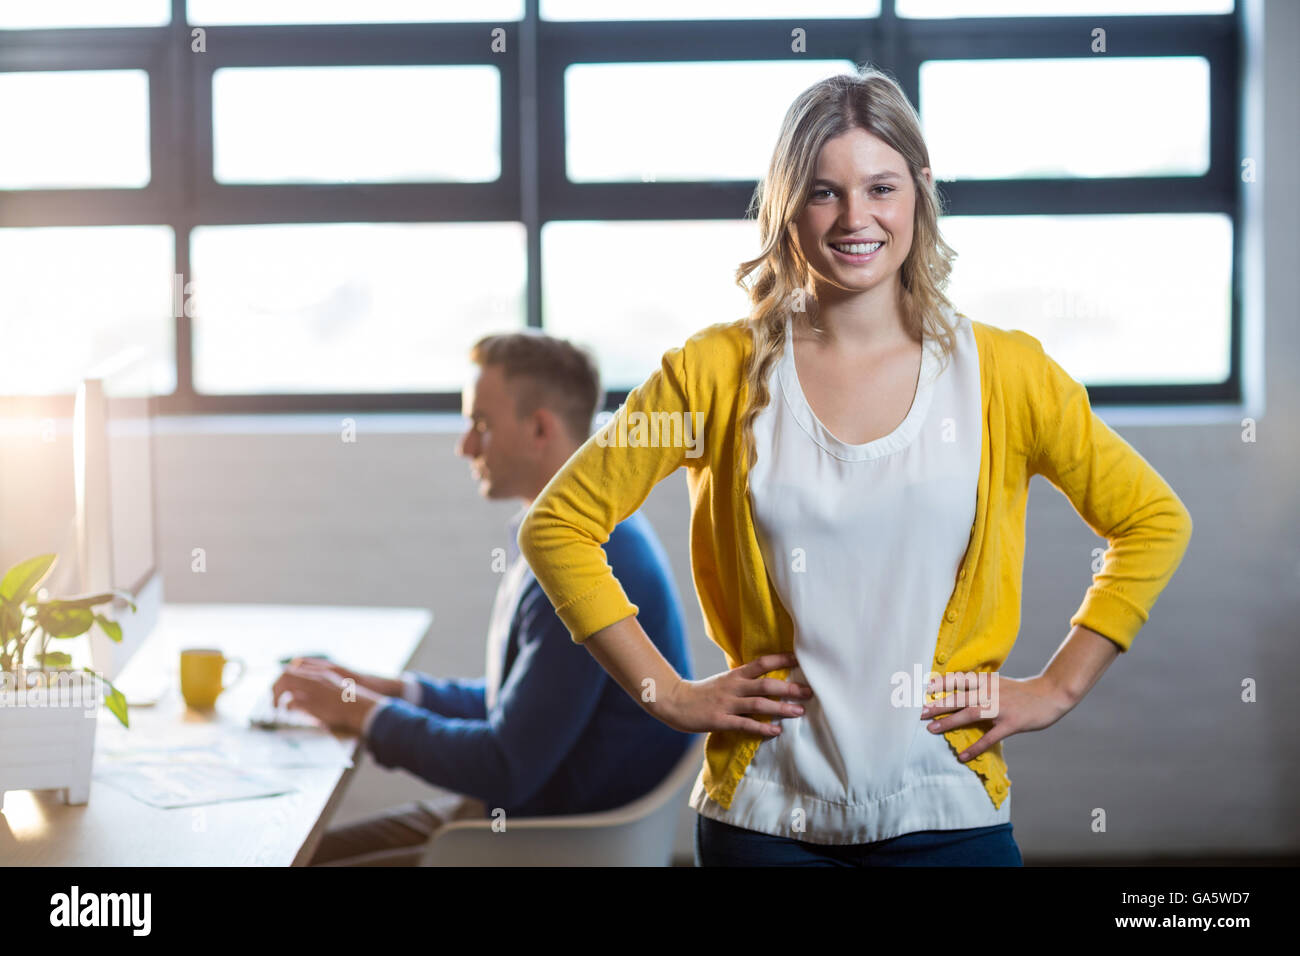 Portrait de femme heureuse par in office Banque D'Images